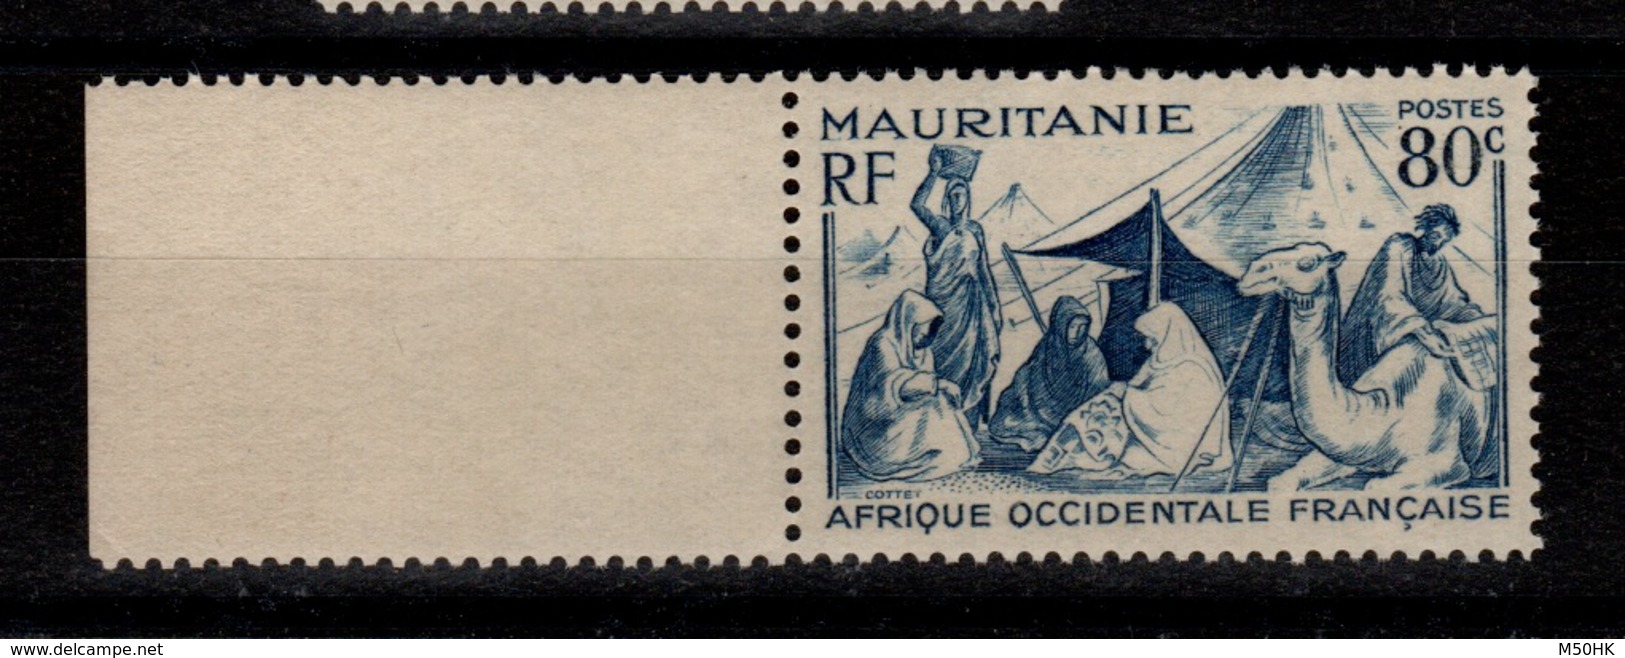 Mauritanie - YV 86 N** - Unused Stamps